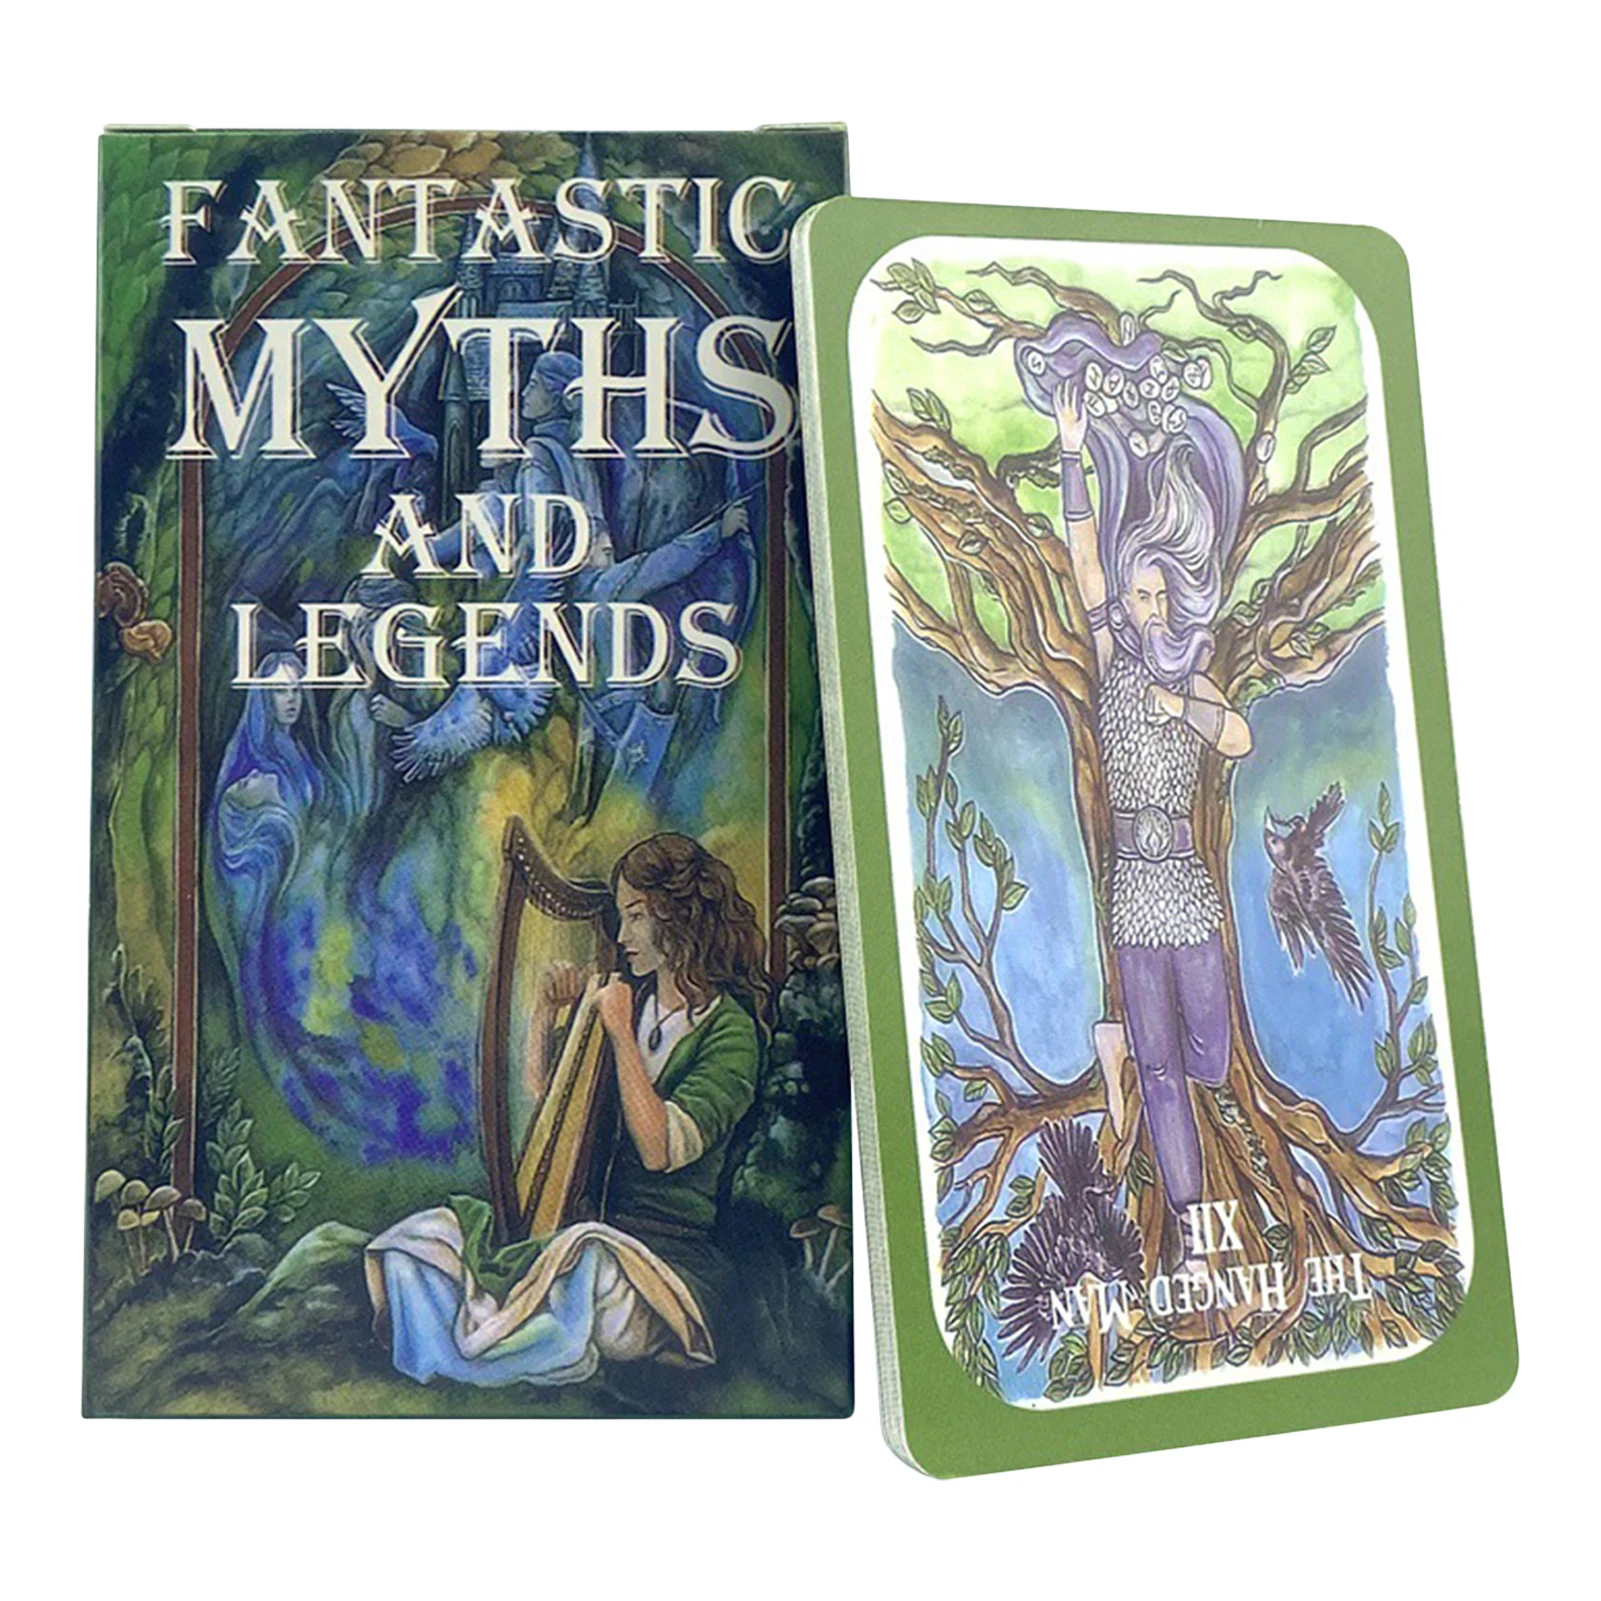 

Фантастические мифы и легенды Таро английская версия красочные стильные карты для родителей и детей настольные игры карты для вечевечерни...